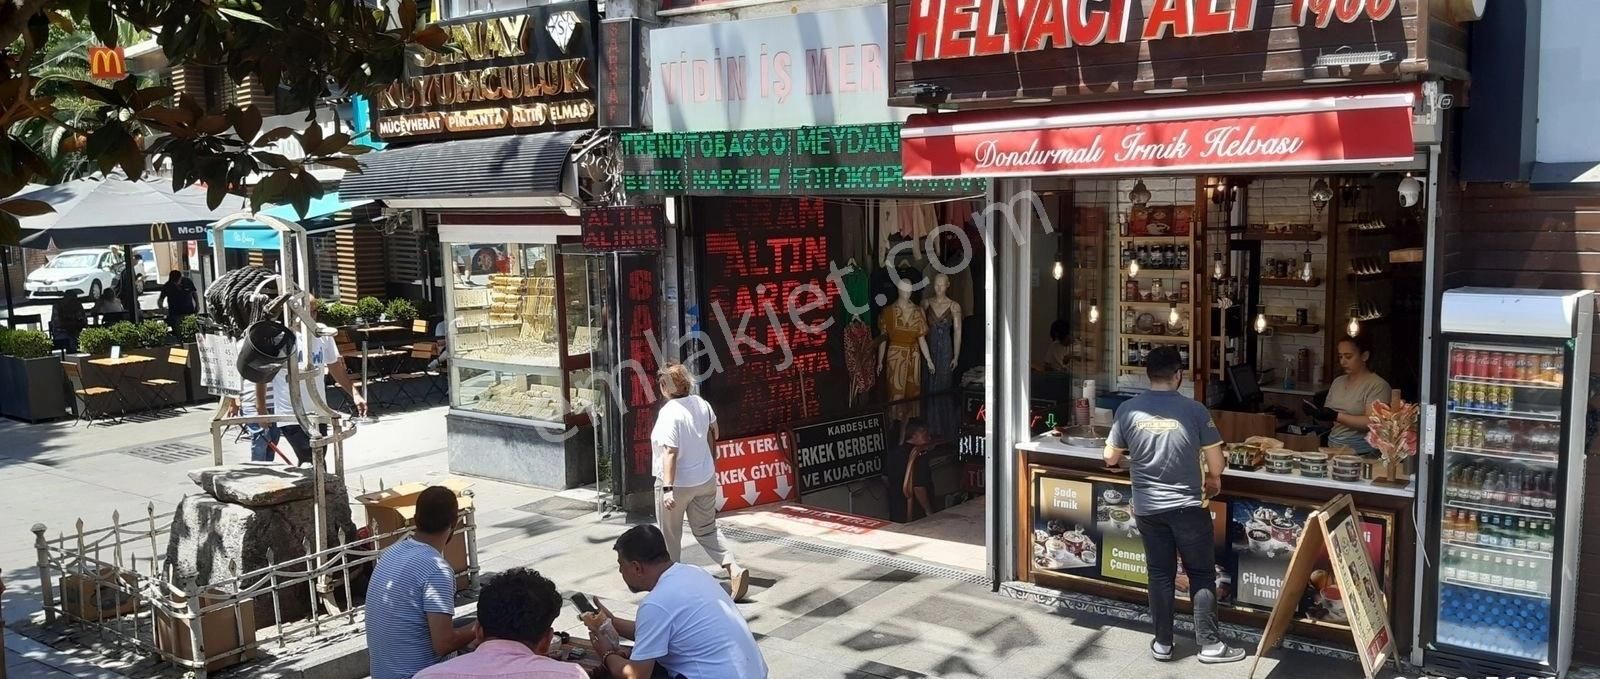 Beşiktaş Sinanpaşa Satılık Dükkan & Mağaza Beşiktaş Meydanında Vidin İş Merkezinde Dükkan